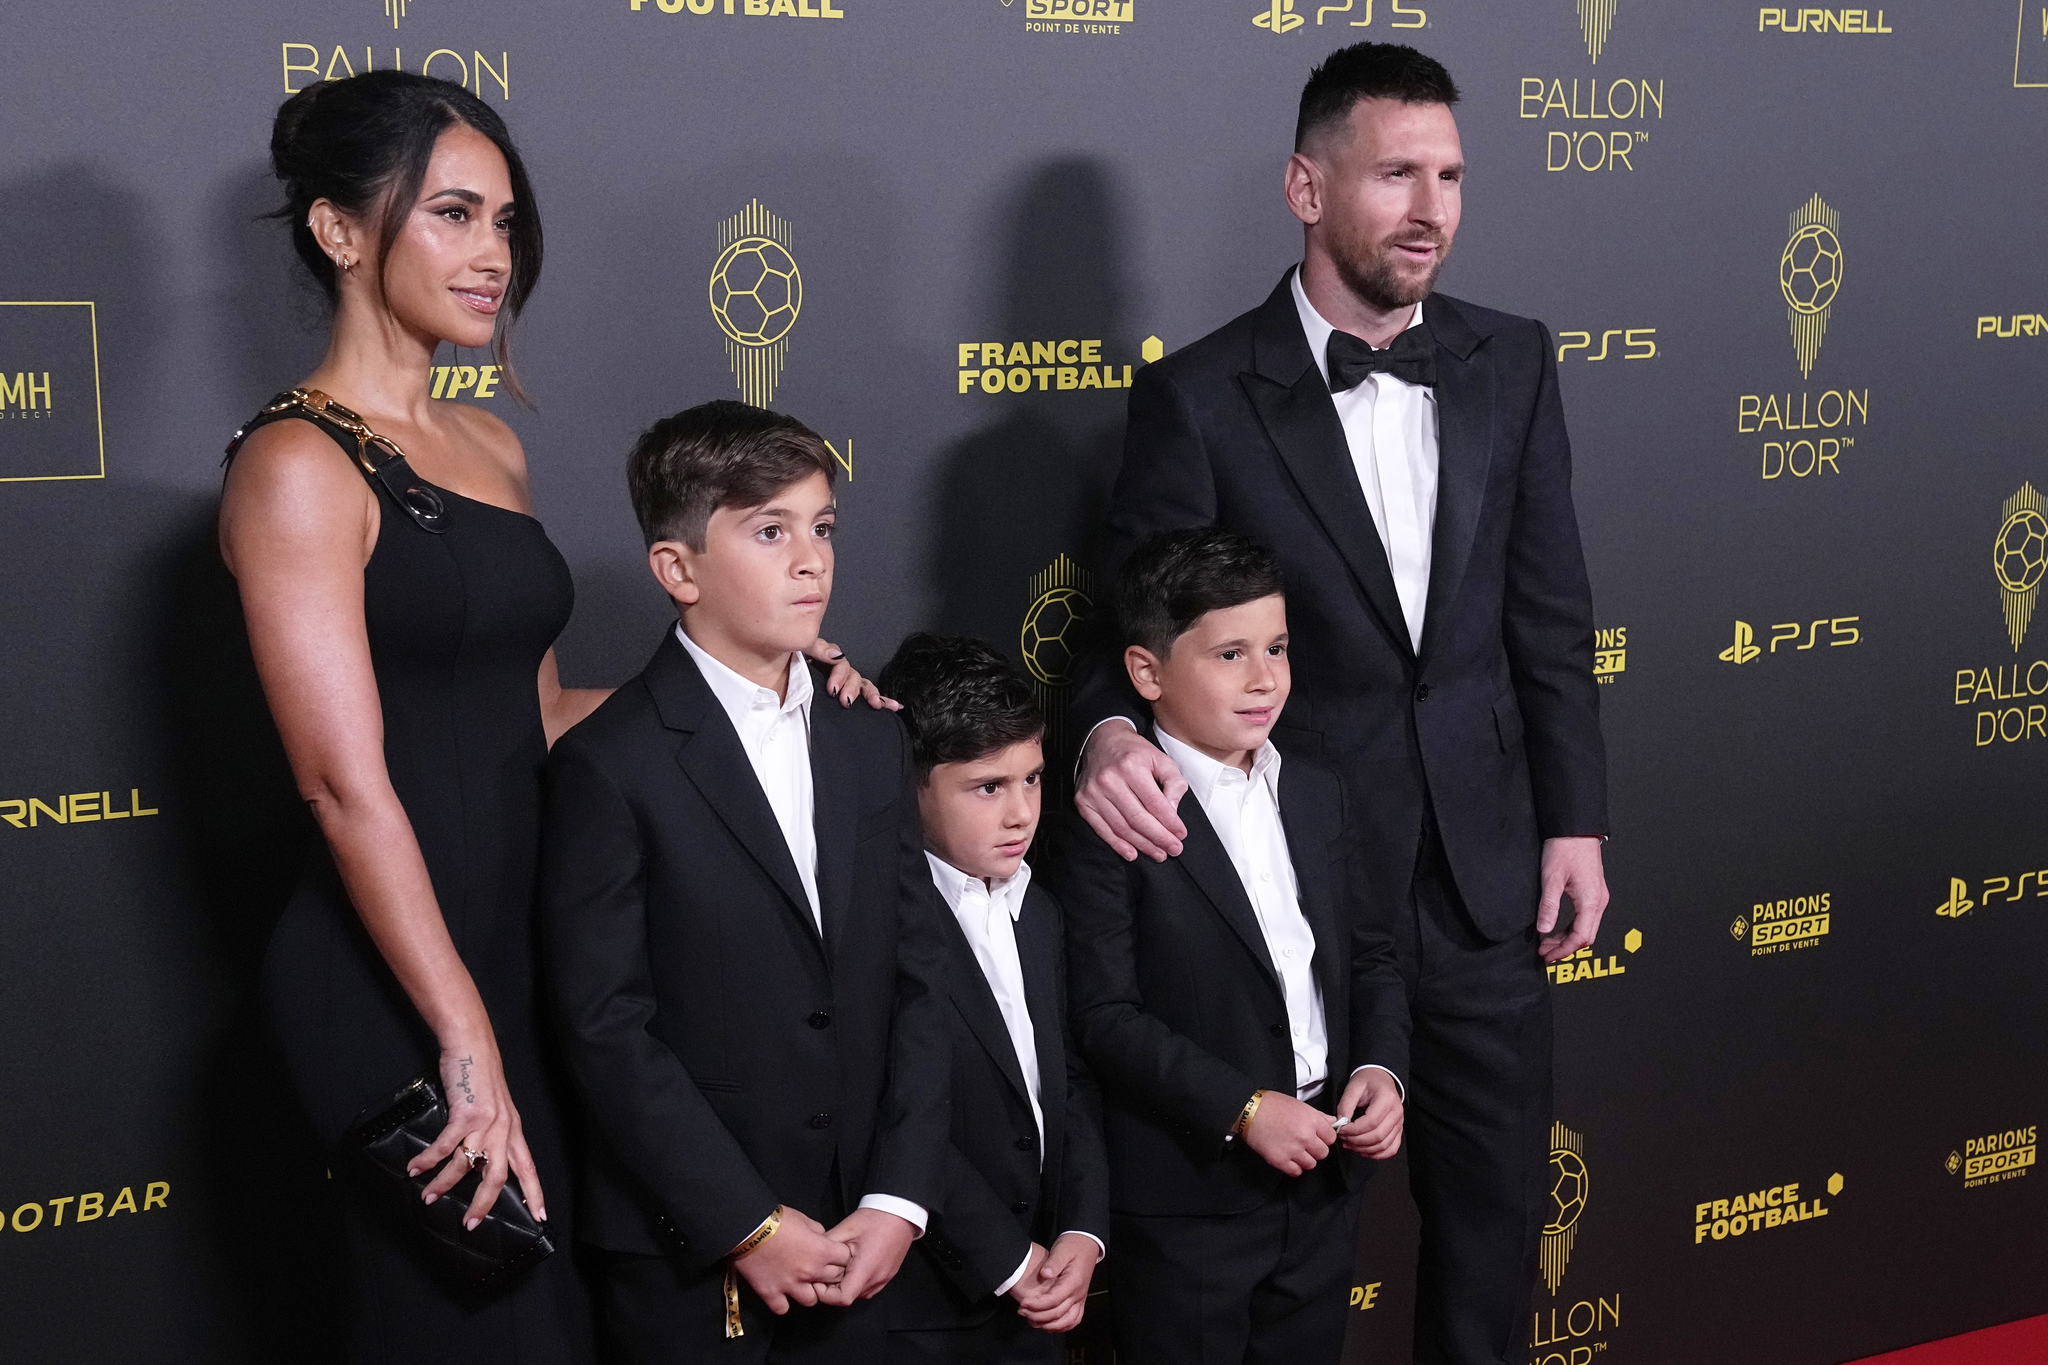 Inter Miami's Lionel Messi with Antonela Roccuzzo and their childrenat the 67th Ballon d'Or award ceremony